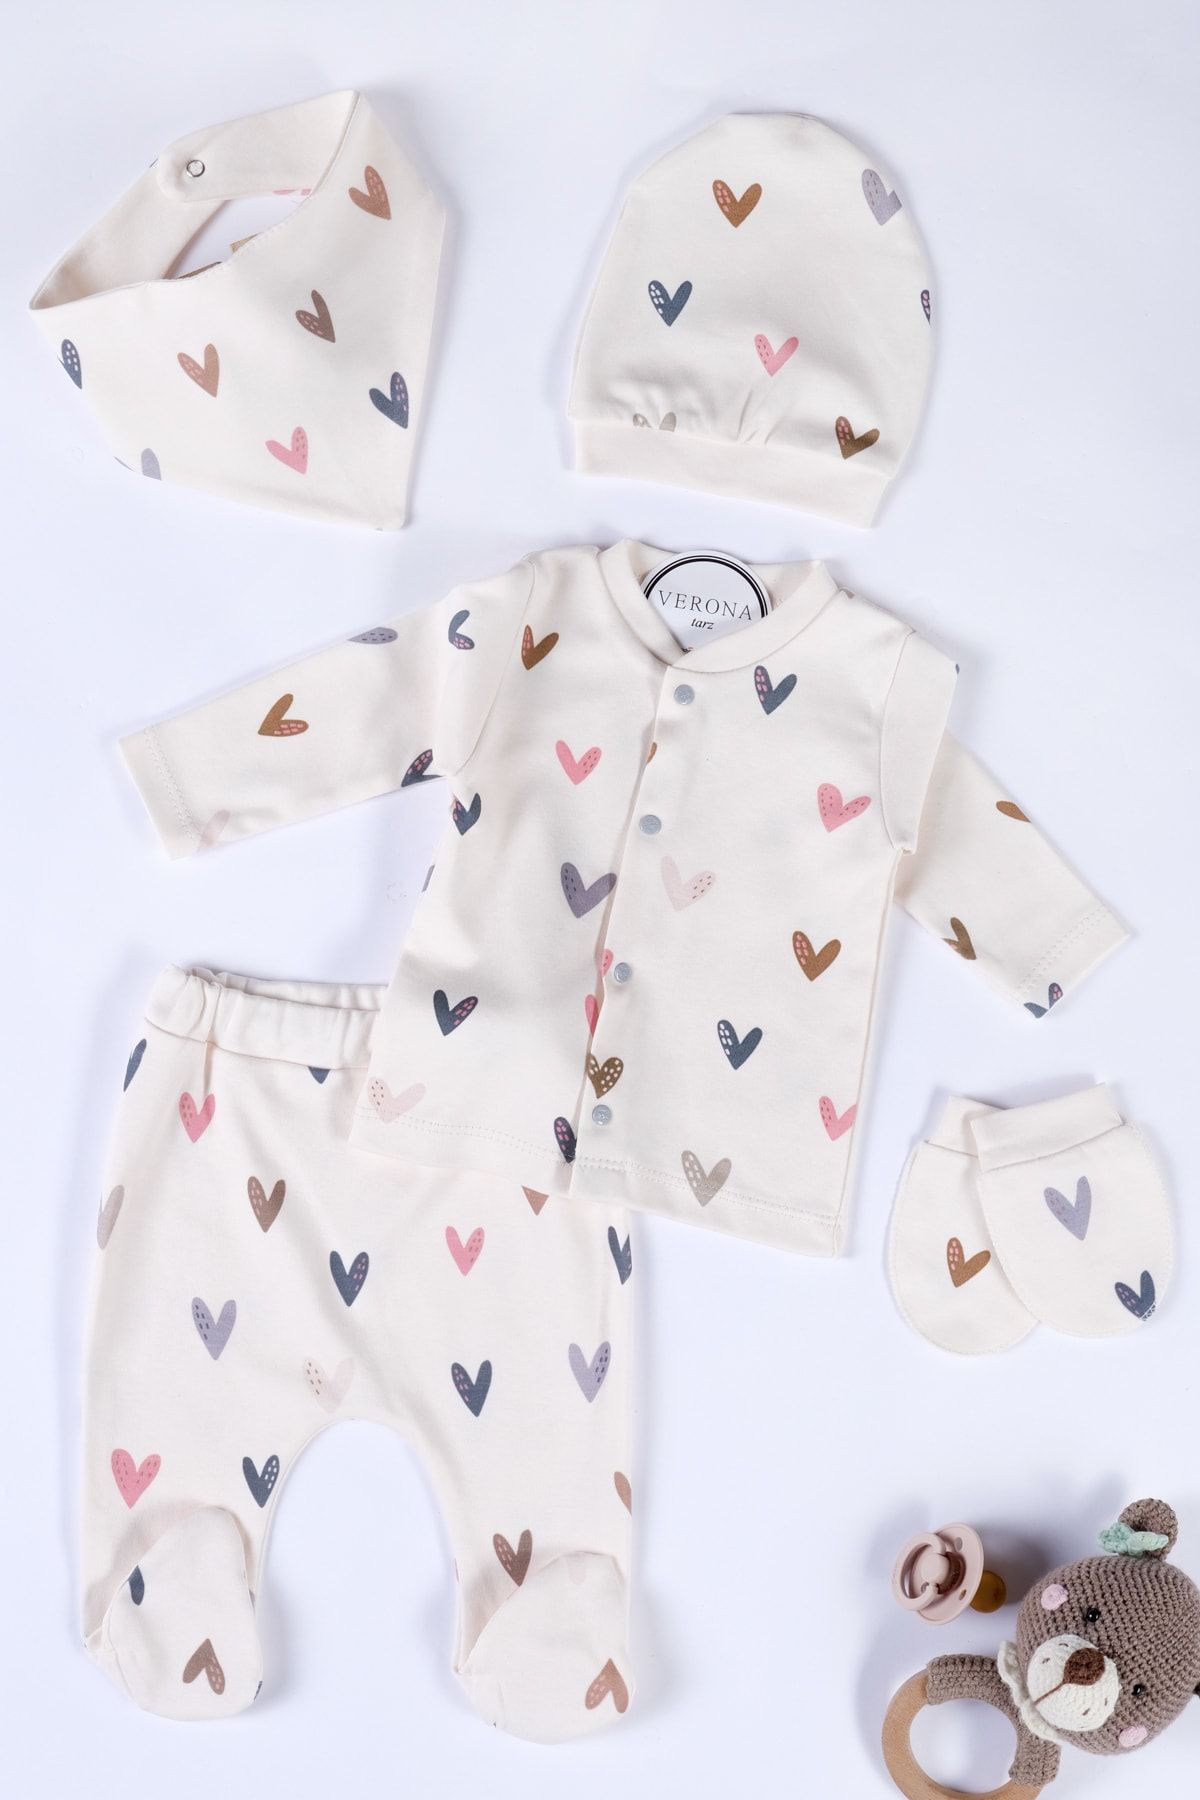 VERONA TARZ Yeni Sezon Kız Erkek Bebek Unisex Desenli Organik Pamuk 5li Hastane Çıkışı Yenidoğan Kıyafeti